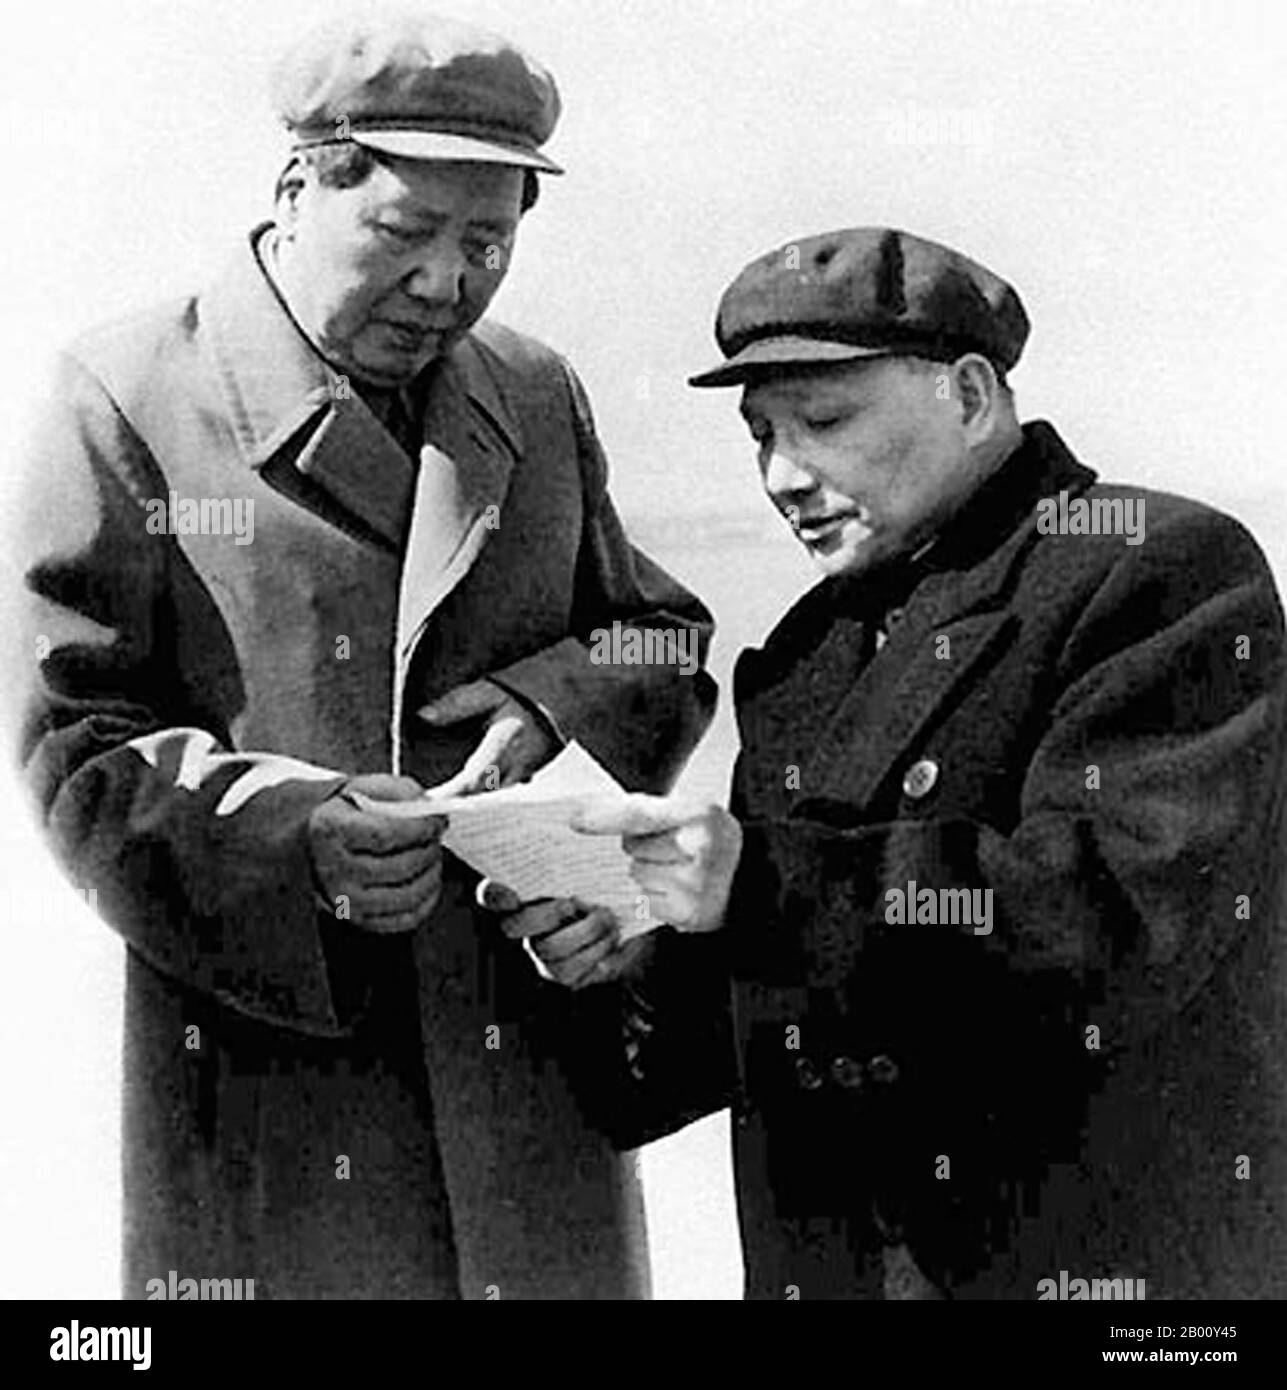 Cina: MAO Zedong e Deng Xiaoping, Pechino, 1959. Mao Zedong, anch'esso traslitterato come Mao TSE-Tung (26 dicembre 1893 – 9 settembre 1976), è stato un rivoluzionario comunista cinese, stratega della guerriglia, autore, teorico politico e leader della Rivoluzione cinese. Comunemente indicato come presidente Mao, è stato l'architetto della Repubblica popolare Cinese (PRC) dalla sua fondazione nel 1949, e ha mantenuto il controllo autoritario sulla nazione fino alla sua morte nel 1976. Il suo contributo teorico al marxismo-leninismo, comprese le strategie militari, sono collettivamente noti come Maoismo. Foto Stock